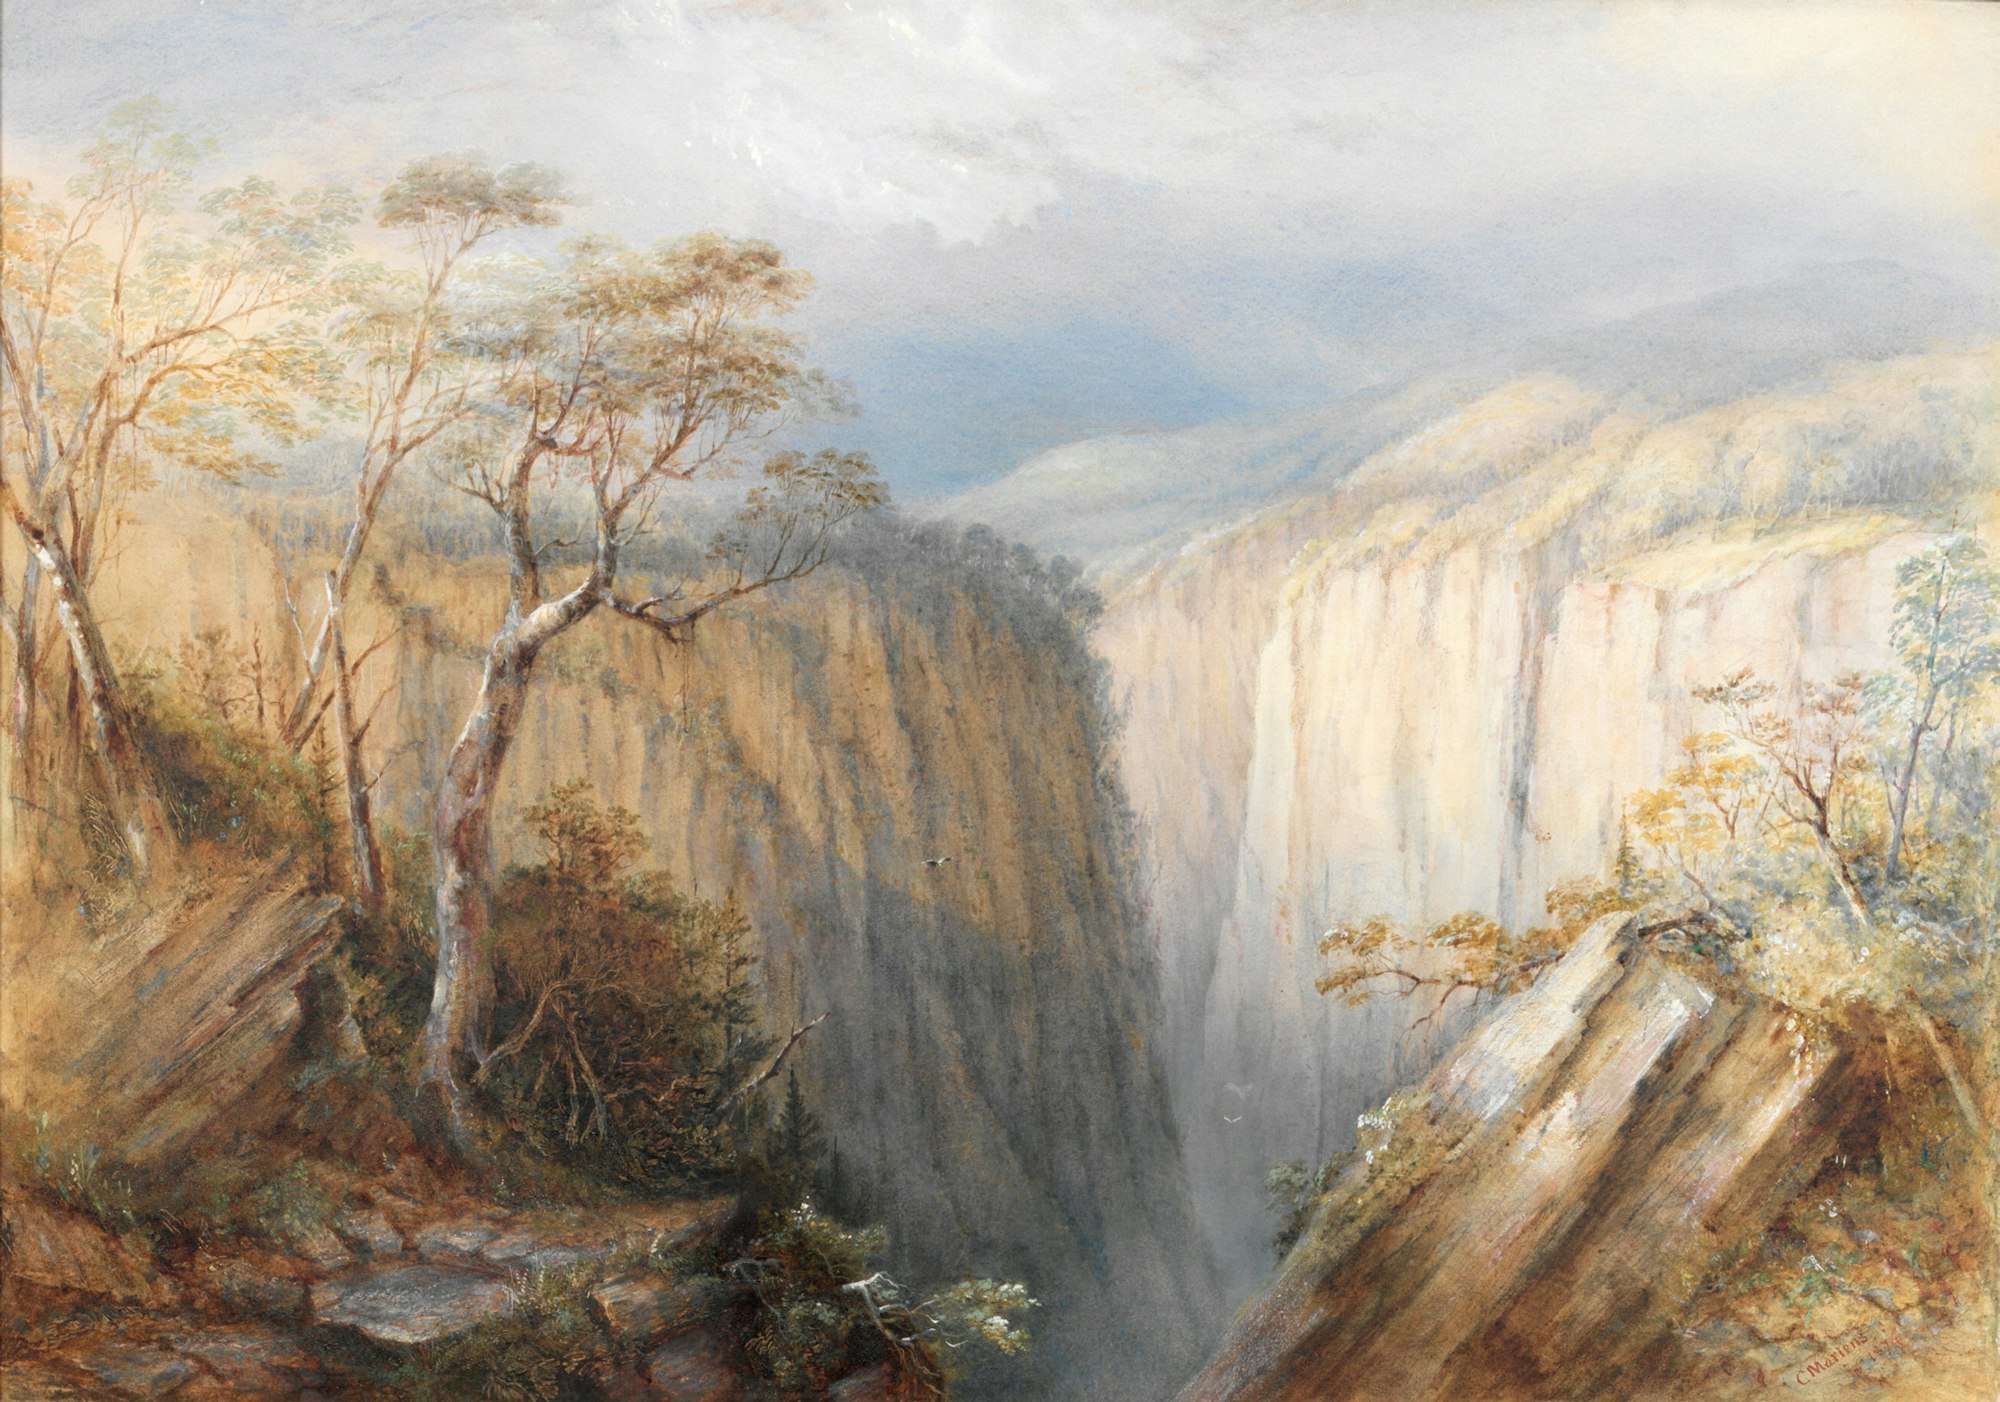 Conrad Martens, Apsley Falls 1874  